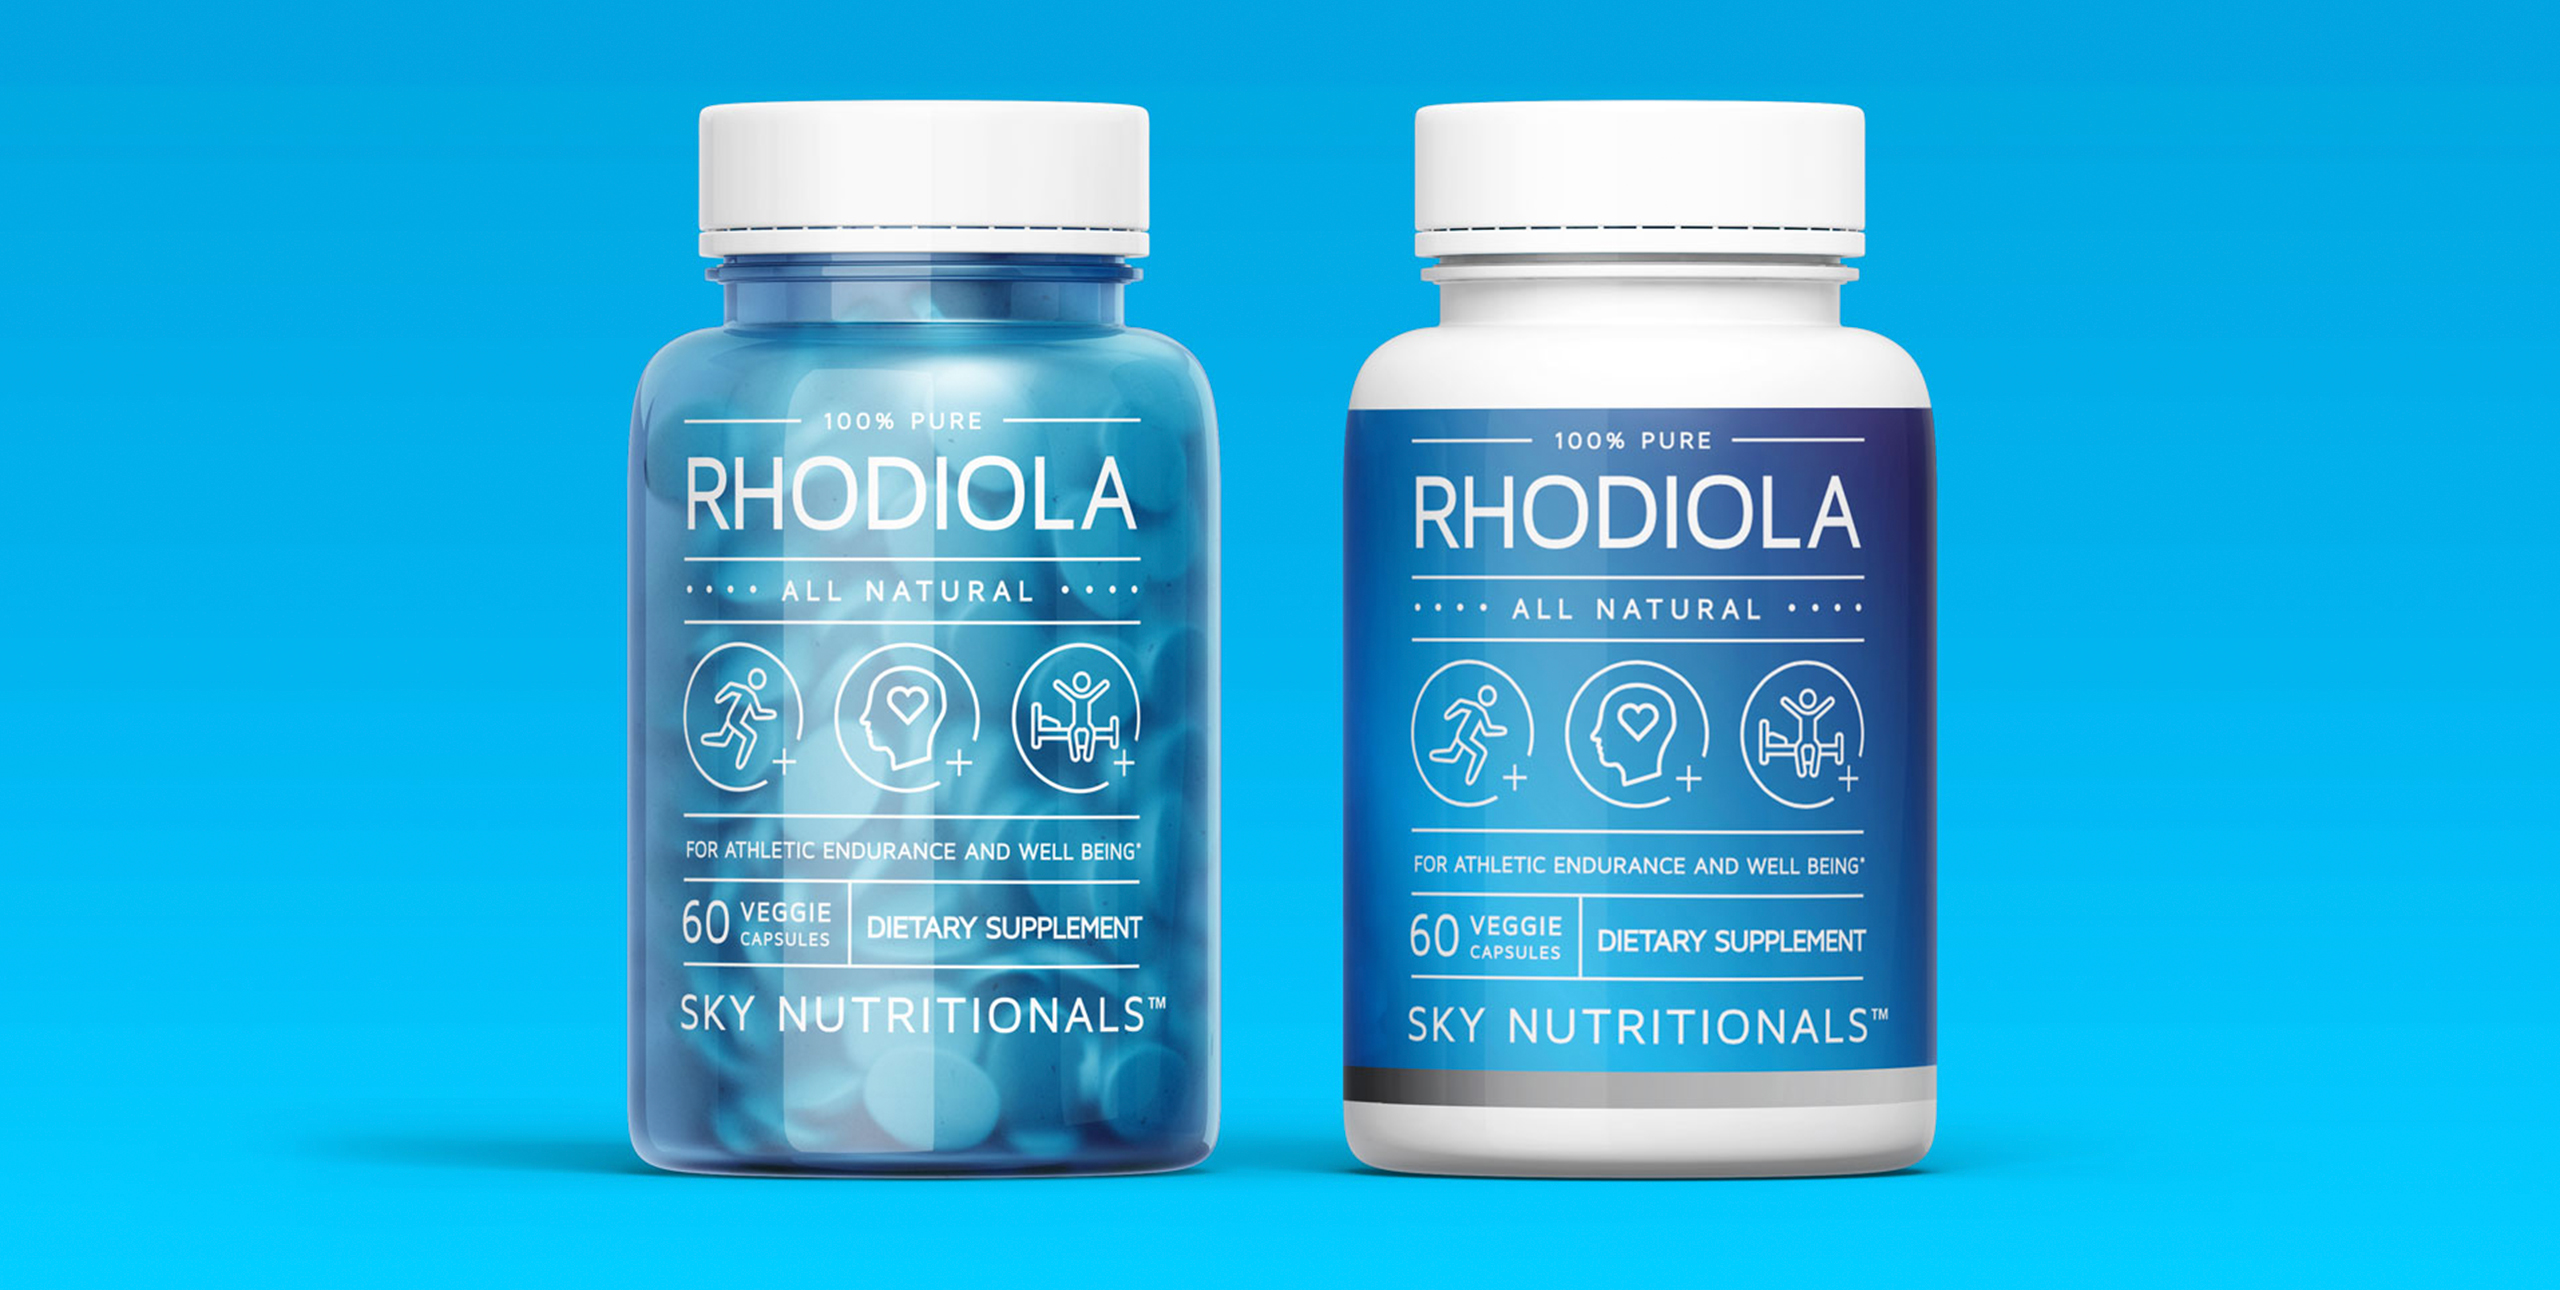 Sky Nutritionals rhodiola bottle packaging design 